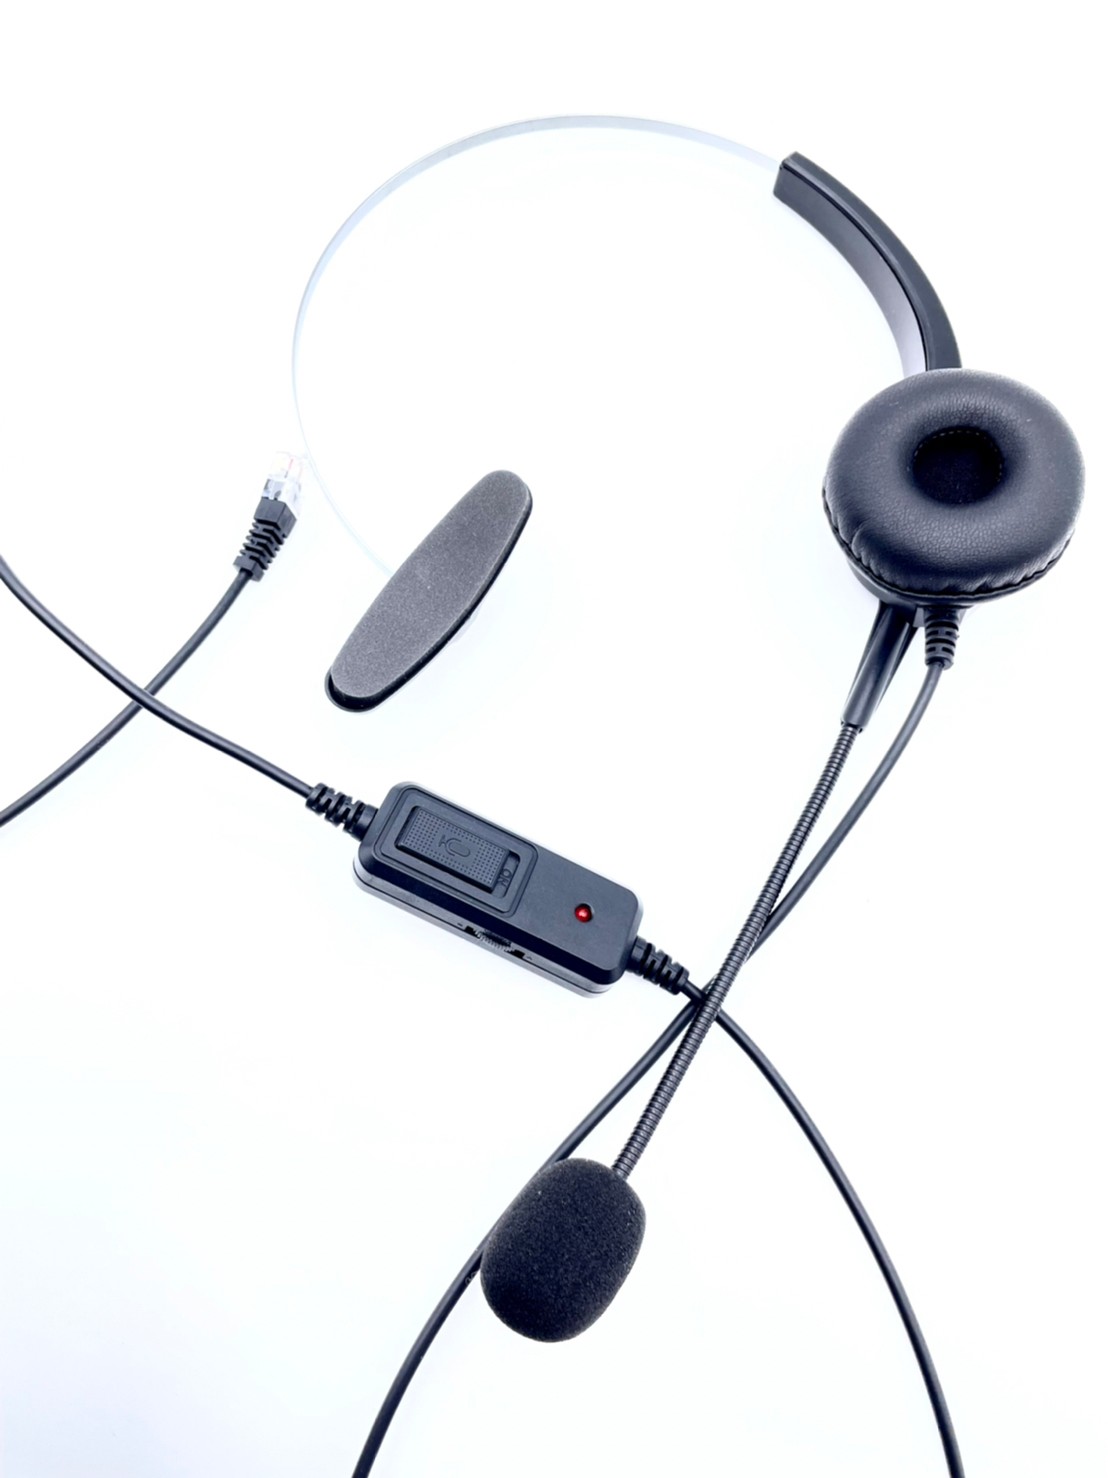 雙耳可調音靜音電話耳機麥克風 AASTRA 6757 另有 Yealink 國際牌 聯盟 通航 瑞通 國洋 思科 安立達電話機使用